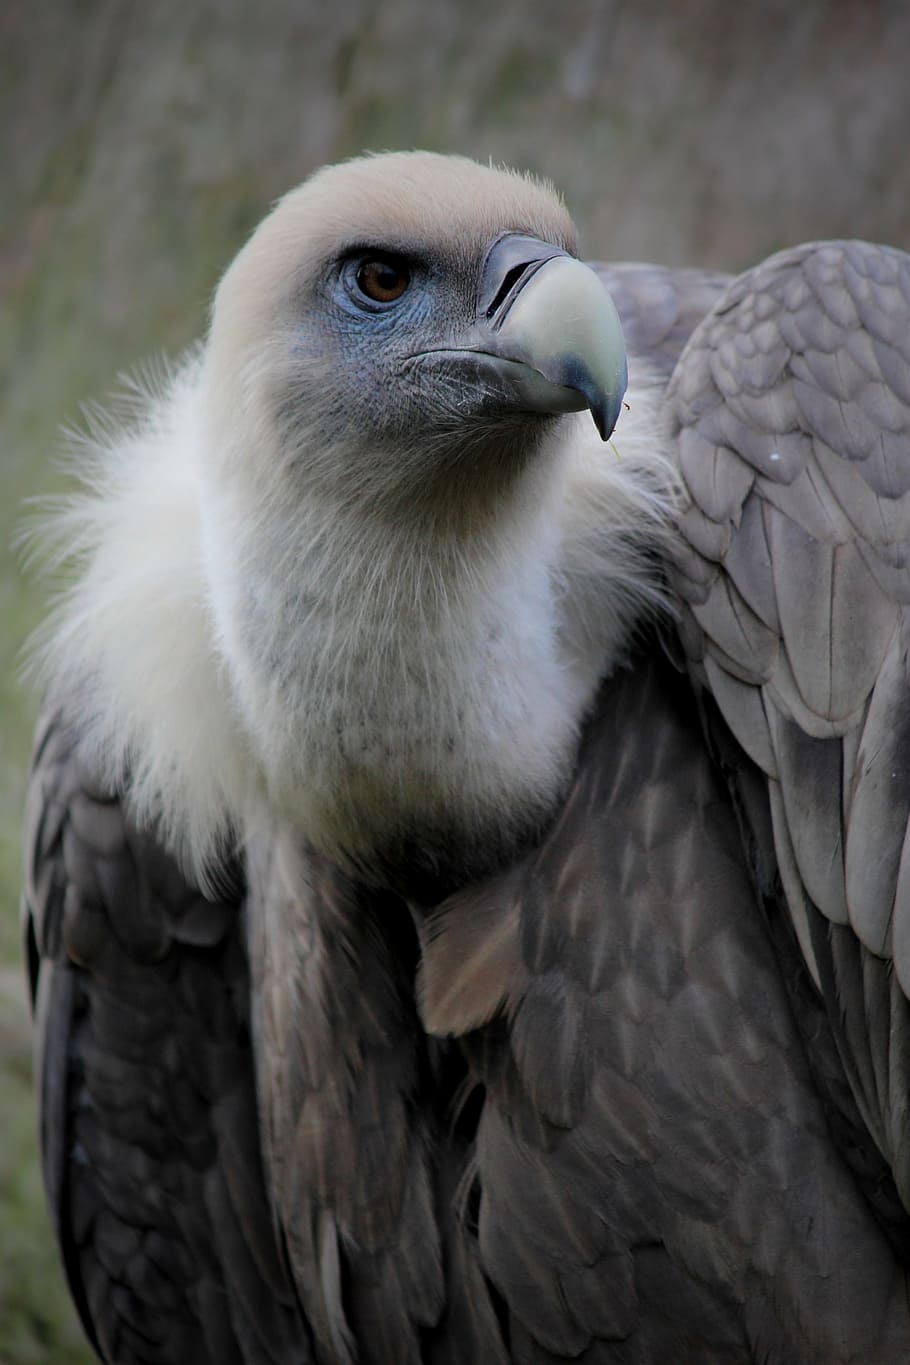 foto do abutre, abutre, penas, ave, bico, ave de rapina, jardim zoológico, abutre-grifo, aterrorizante, um animal